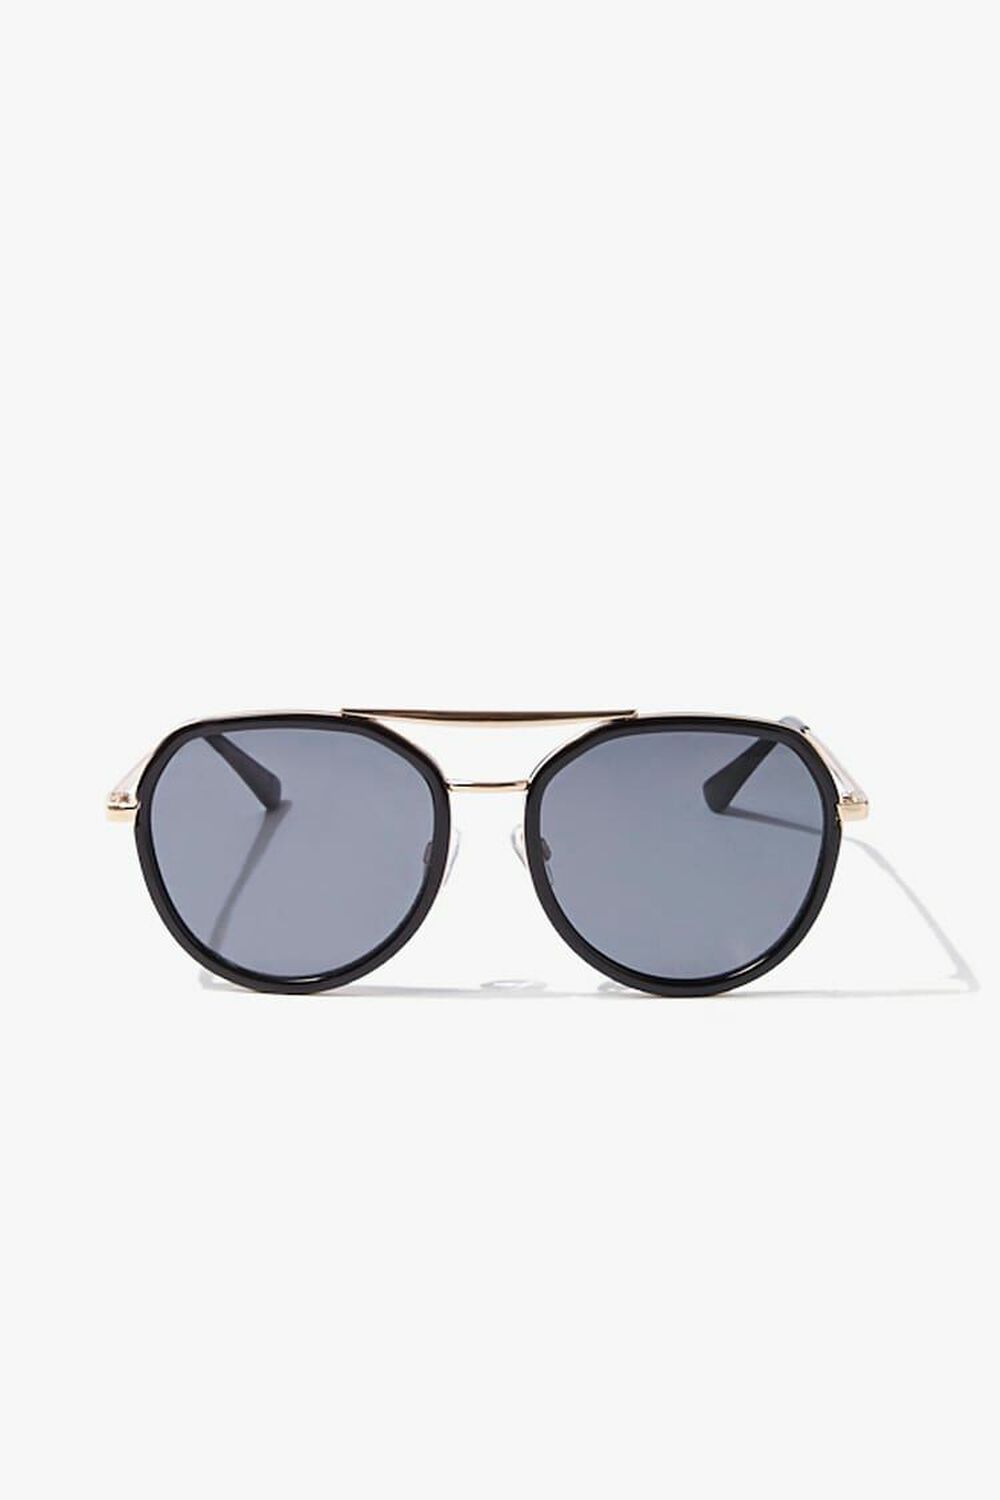 GOLD/BLACK Premium Aviator Sunglasses, image 1